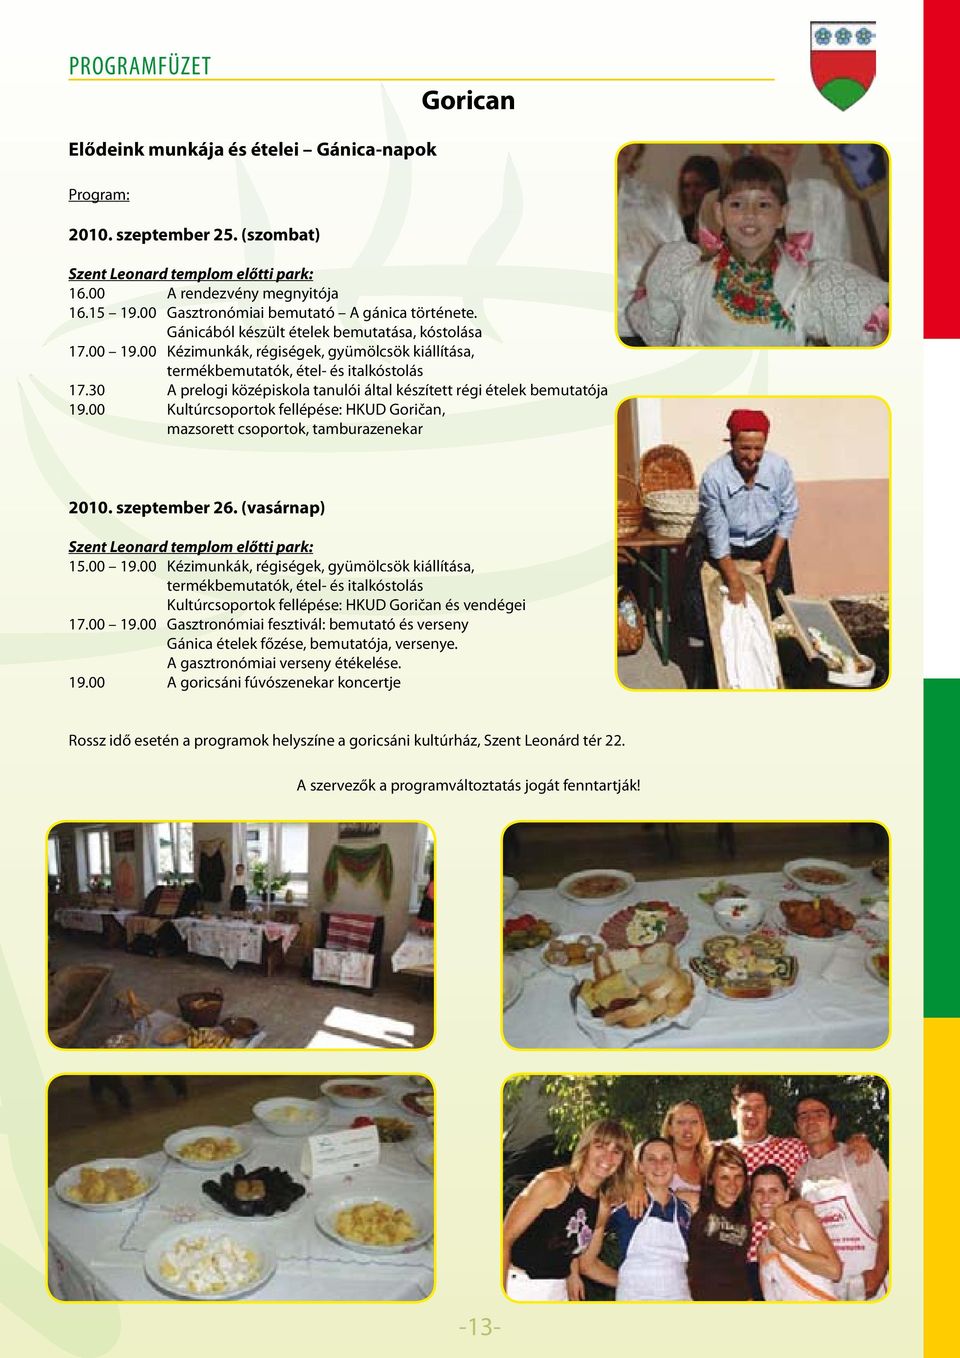 30 A prelogi középiskola tanulói által készített régi ételek bemutatója 19.00 Kultúrcsoportok fellépése: HKUD Goričan, mazsorett csoportok, tamburazenekar 2010. szeptember 26.